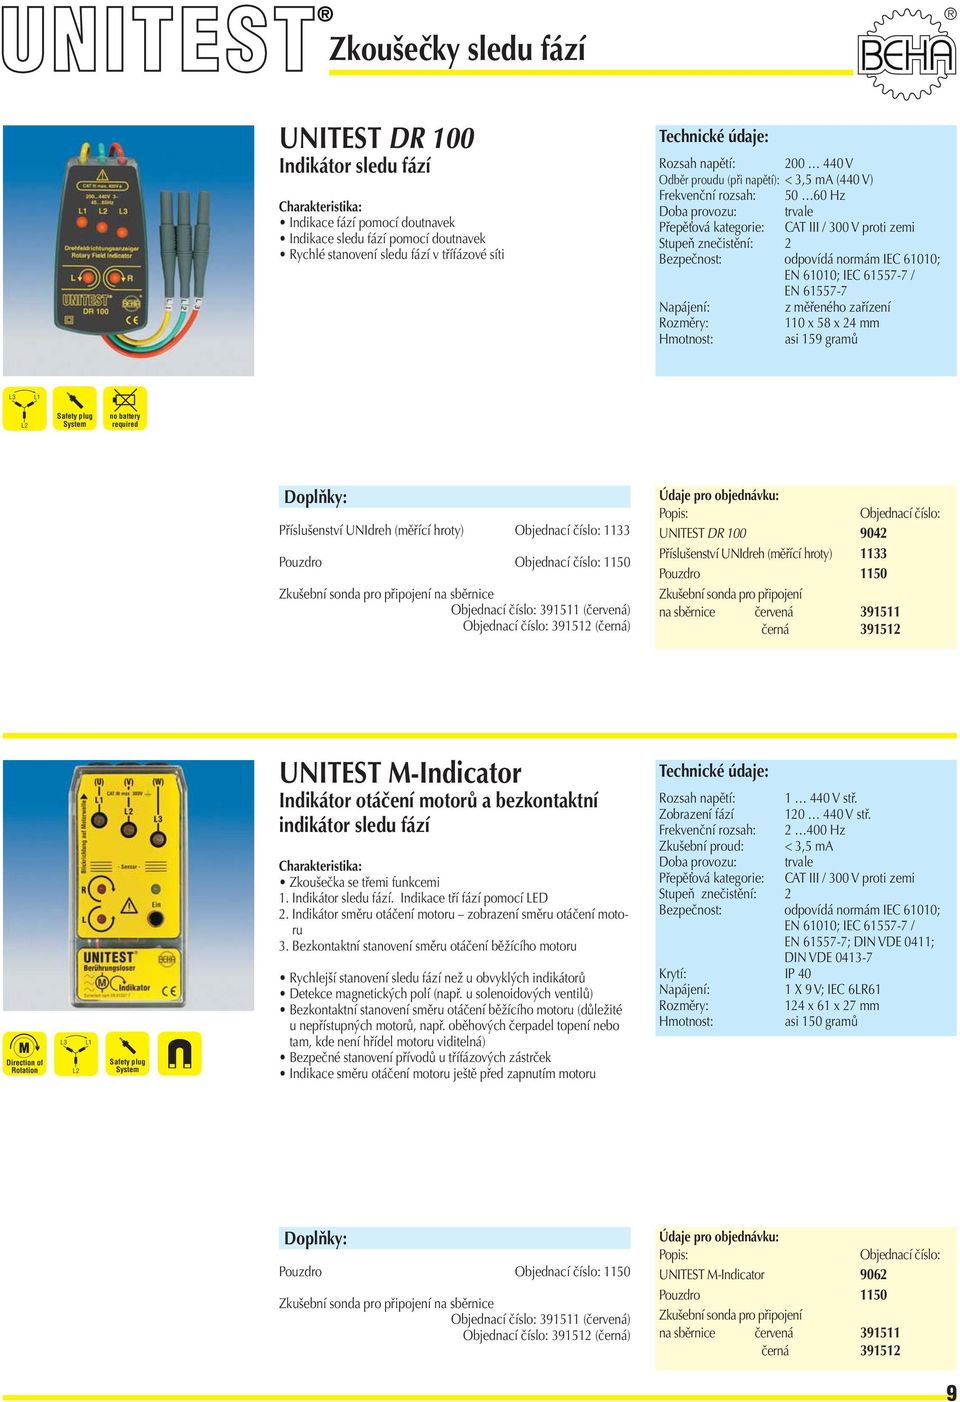 EN 61557-7 Napájení: z měřeného zařízení 110 x 58 x 24 mm asi 159 gramů L3 L1 L2 Safety plug System no battery required Příslušenství UNIdreh (měříí hroty) Objednaí číslo: 1133 Pouzdro Objednaí